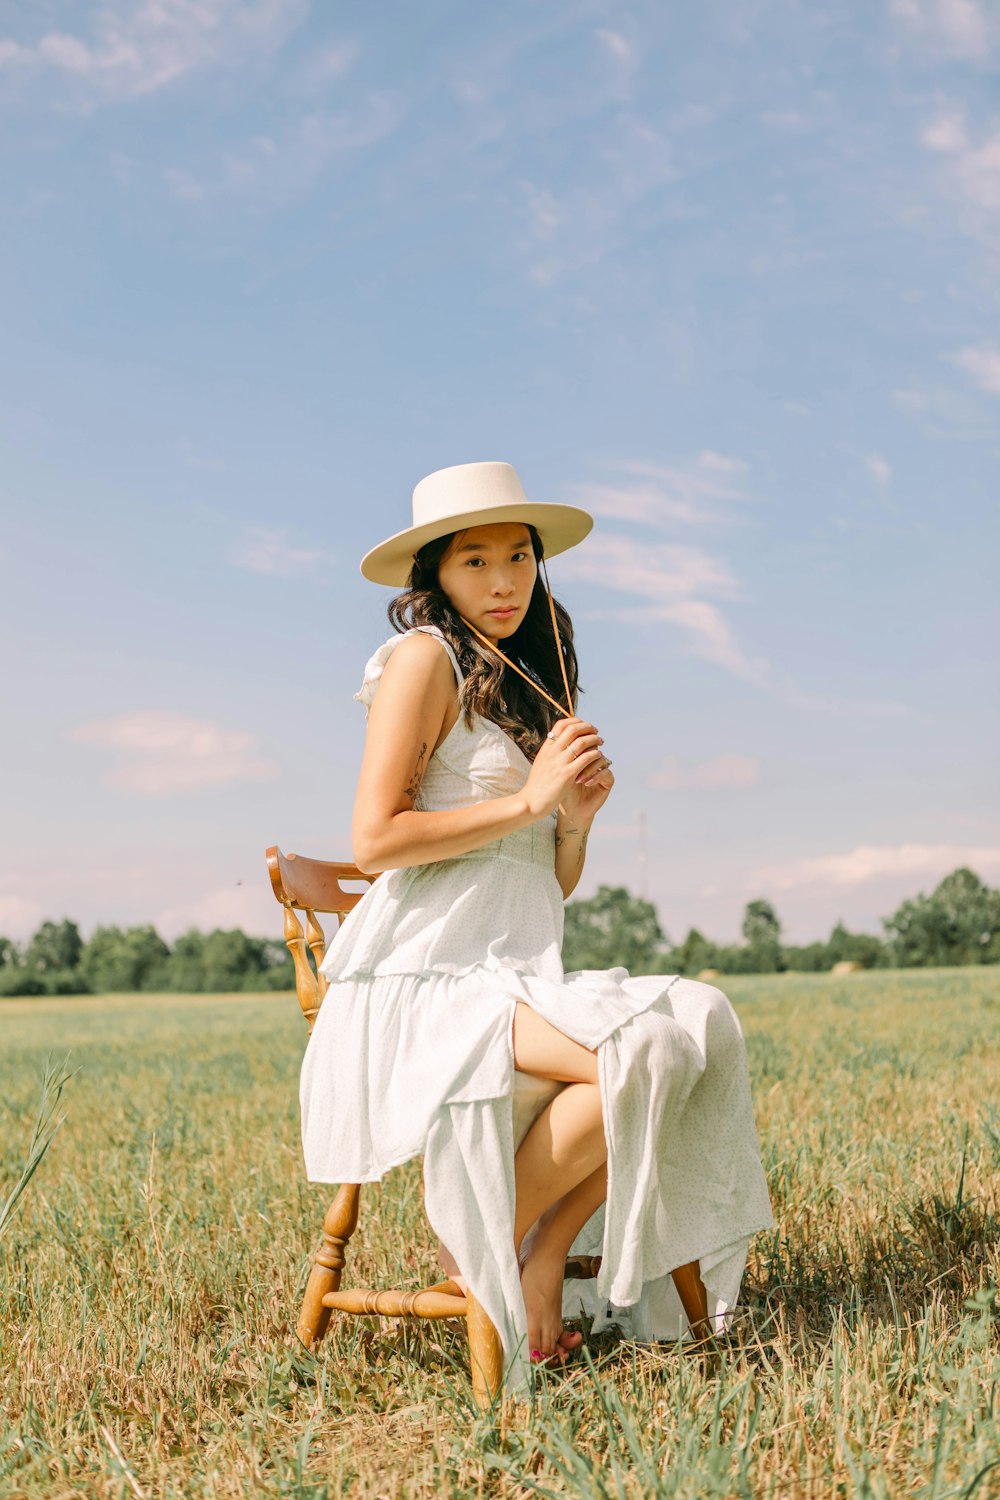 野原に座っている白いドレスと帽子をかぶった人